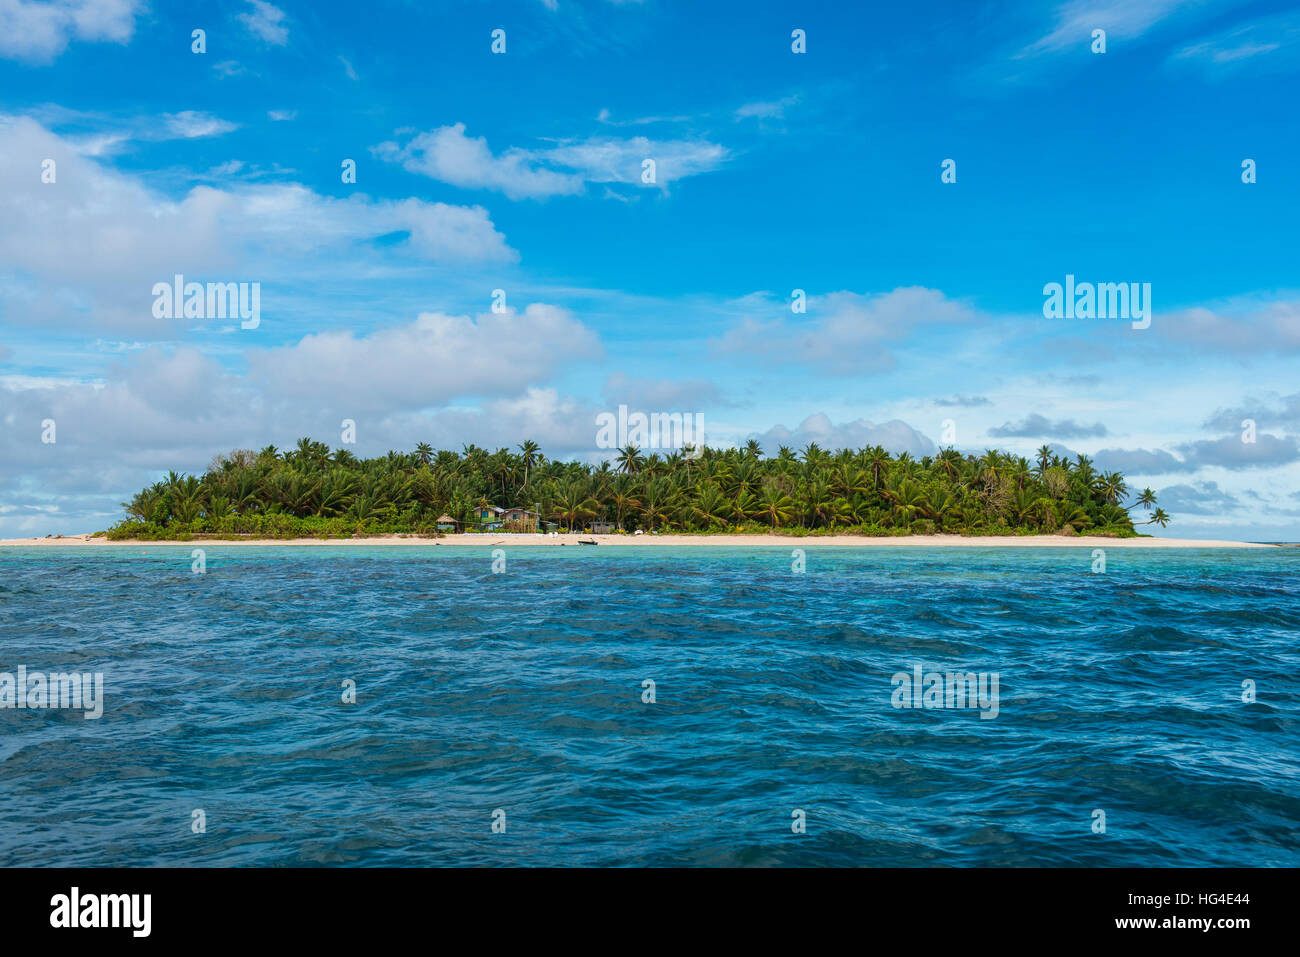 Plage de sable blanc et eau turquoise, Marine National Park, Tuvalu, le Pacifique Sud Banque D'Images